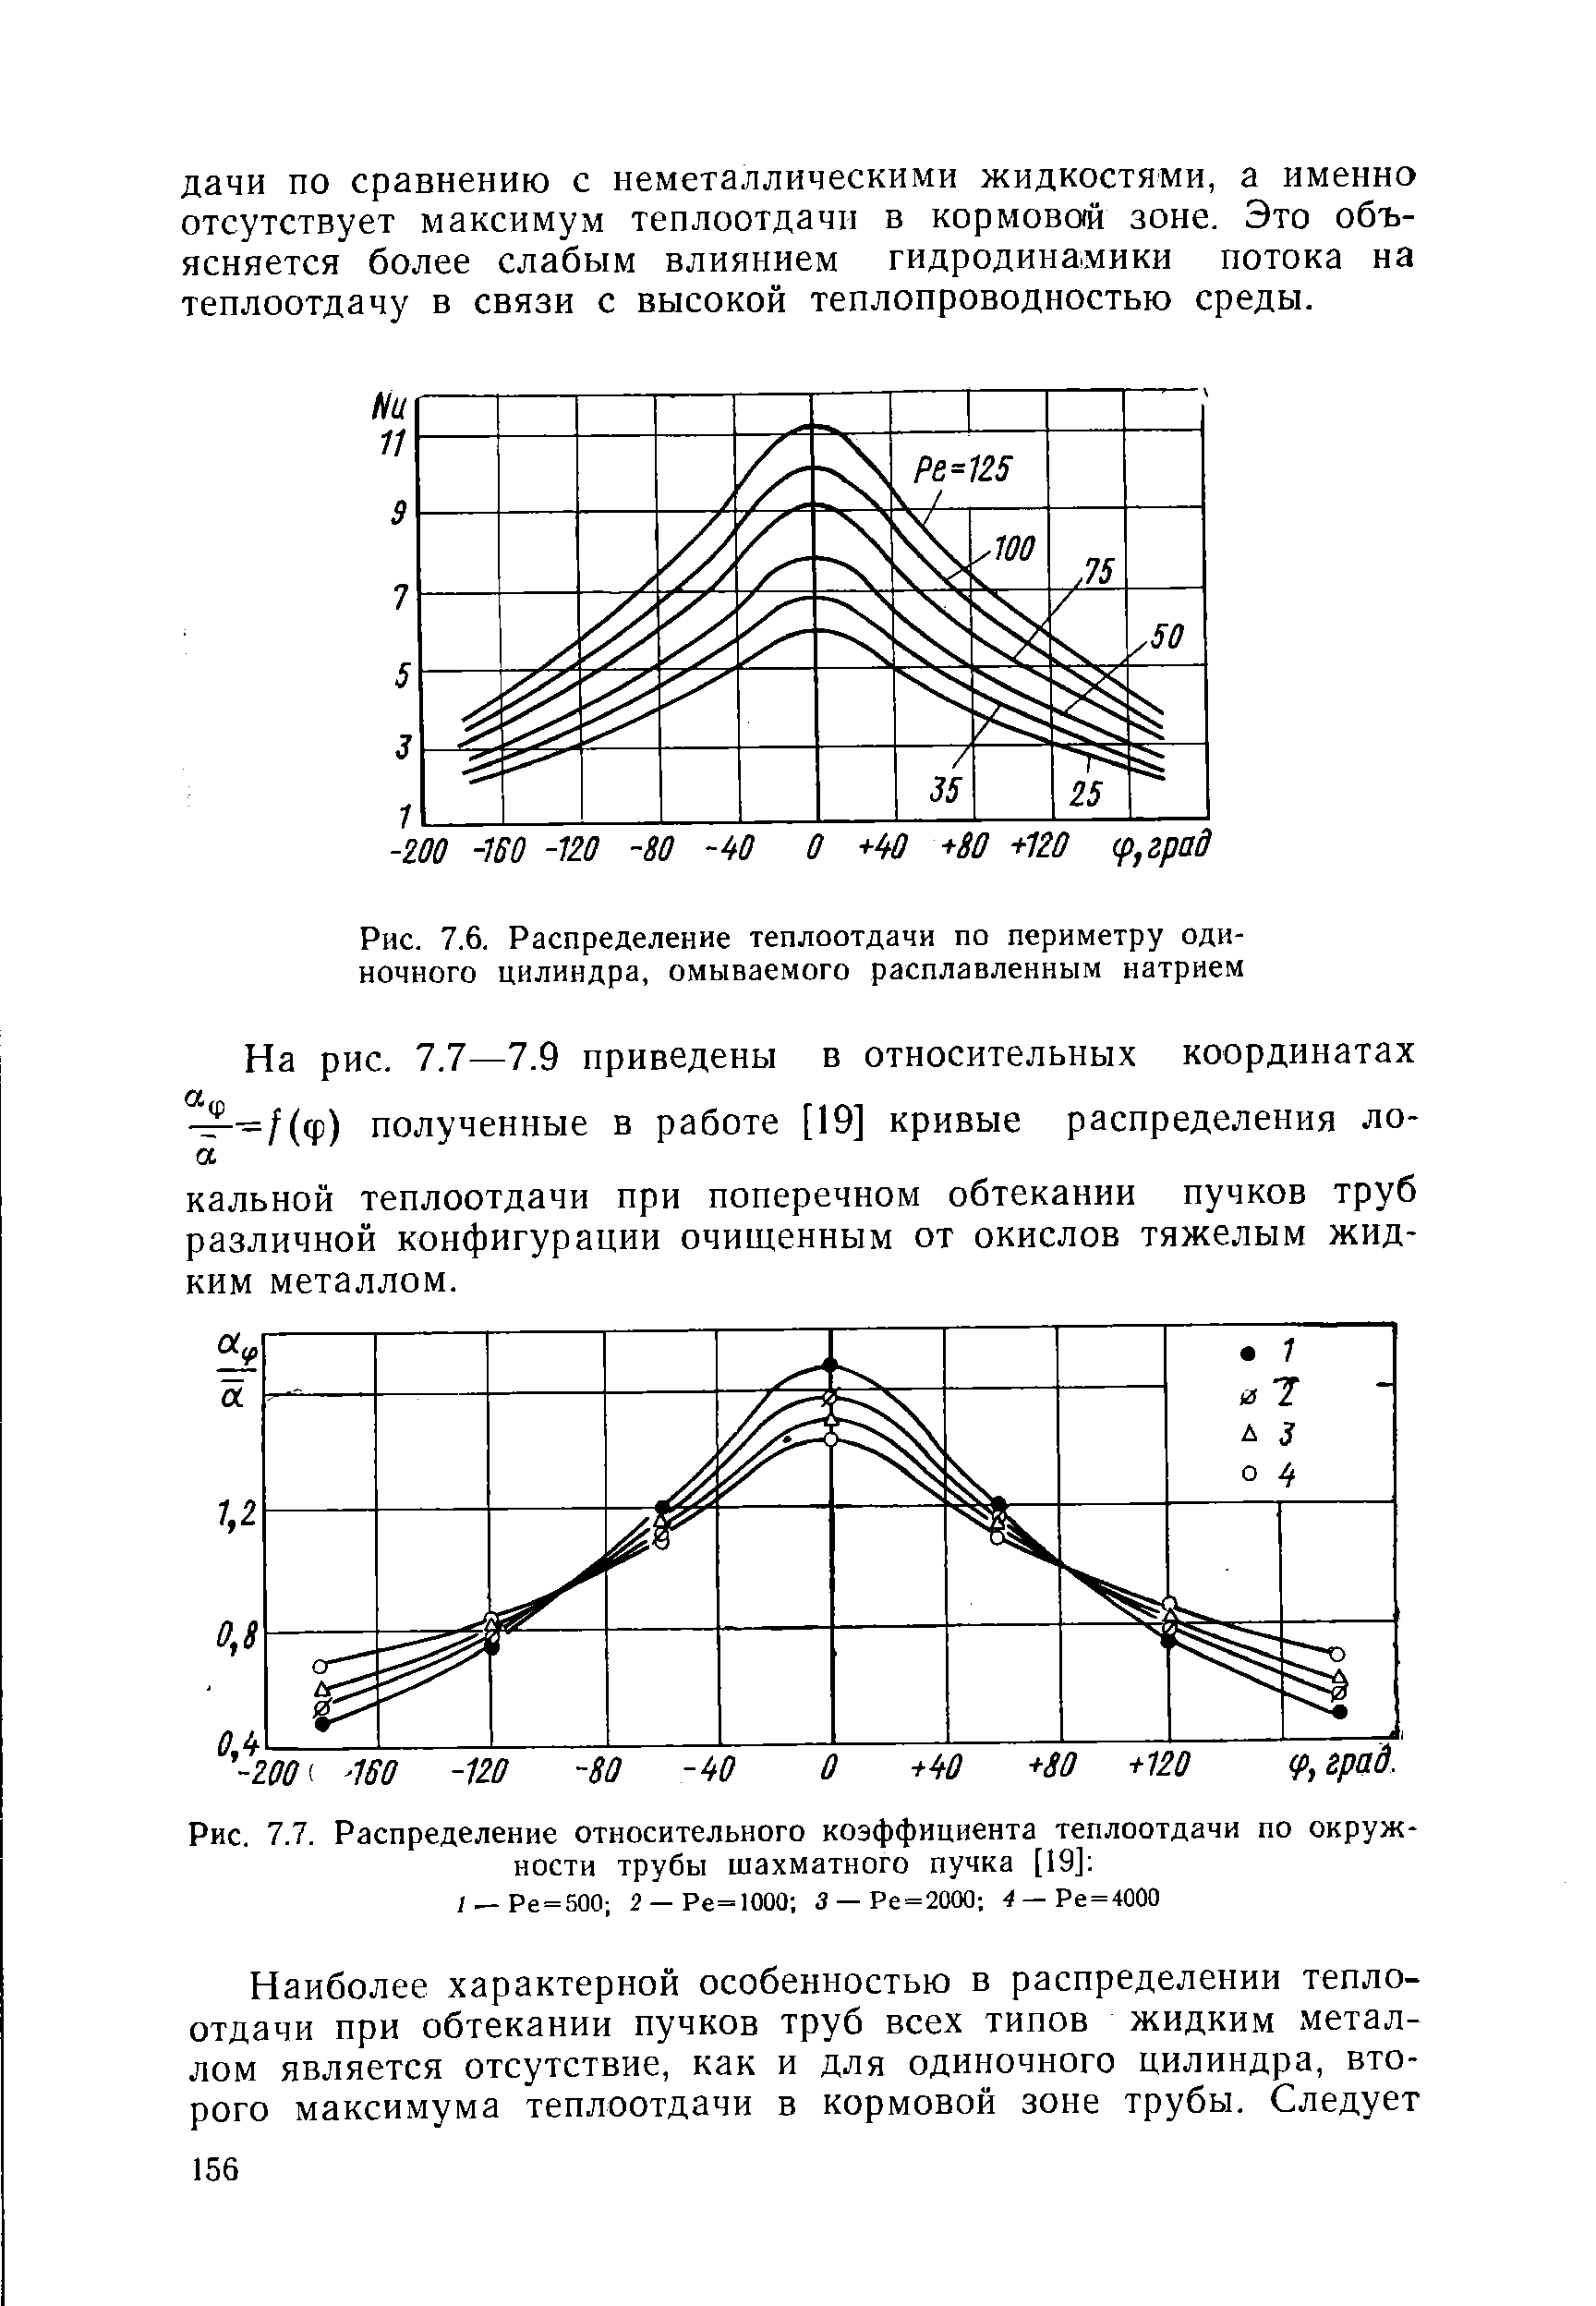 Рис. 7,6. Распределение теплоотдачи по периметру одиночного цилиндра, омываемого расплавленным натрием
